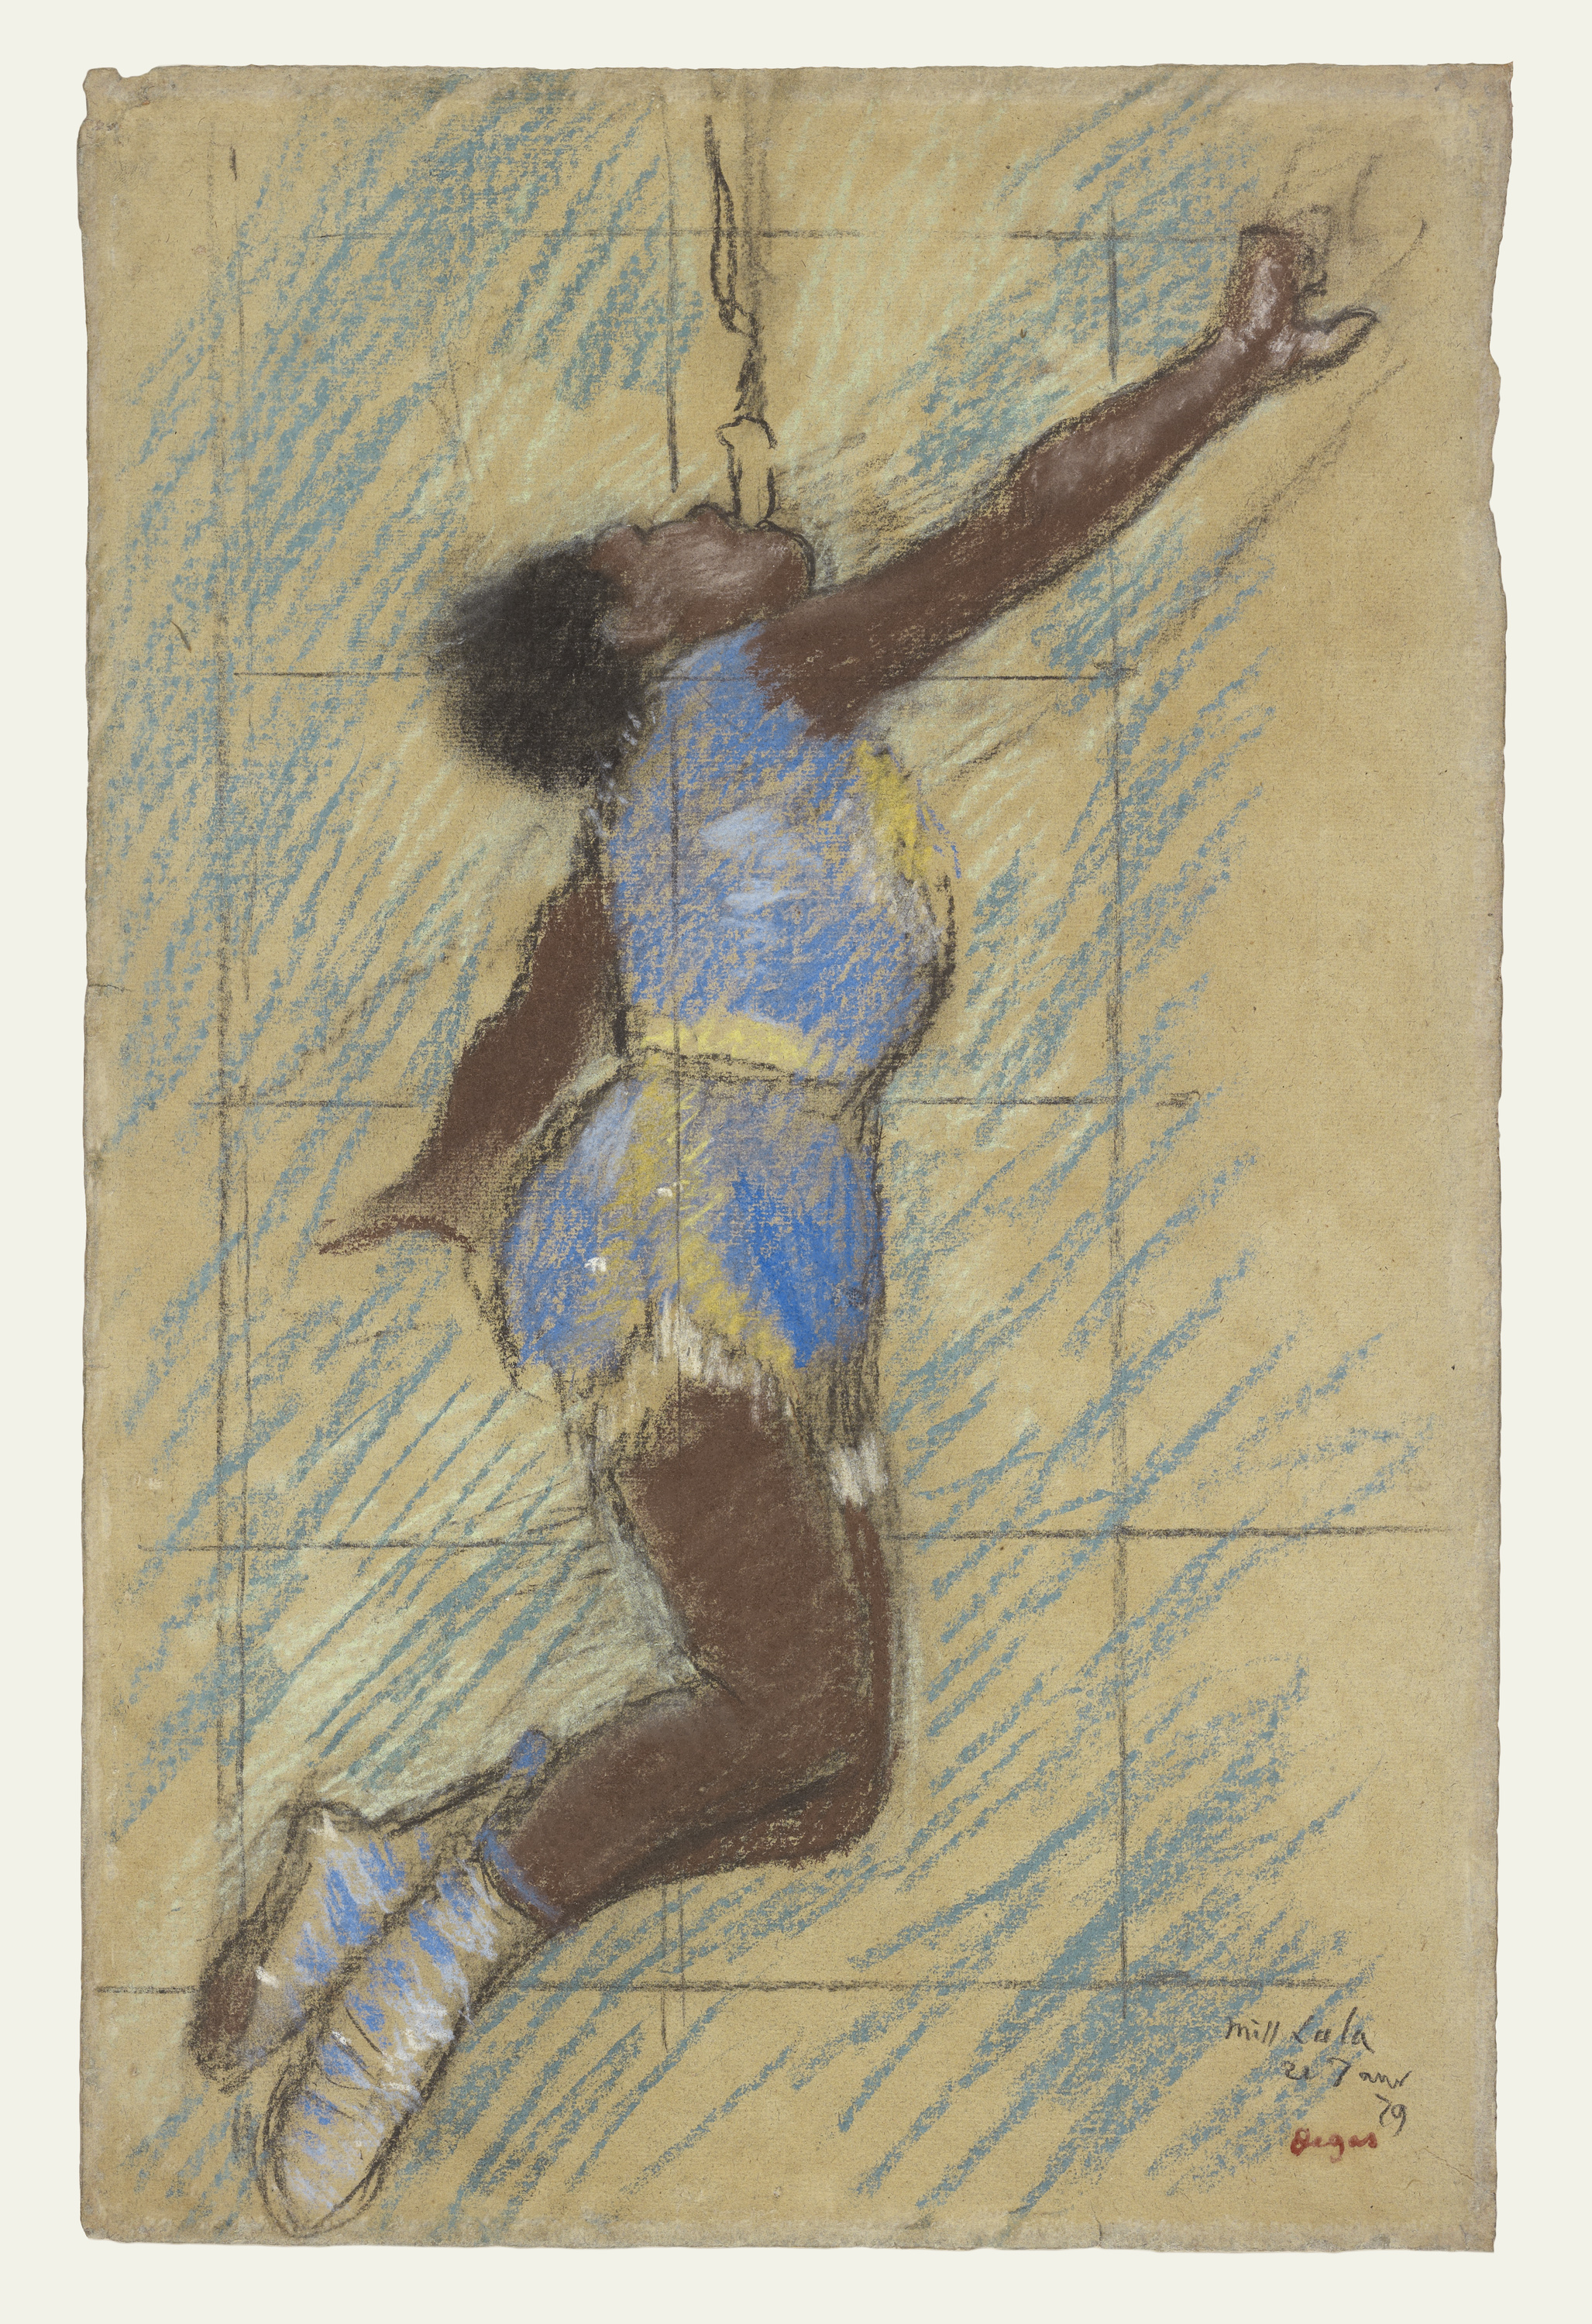 费尔南多马戏团的拉拉小姐 by 埃德加 德加 - 1879 - 46.4 x 29.8 cm 保罗·盖蒂博物馆